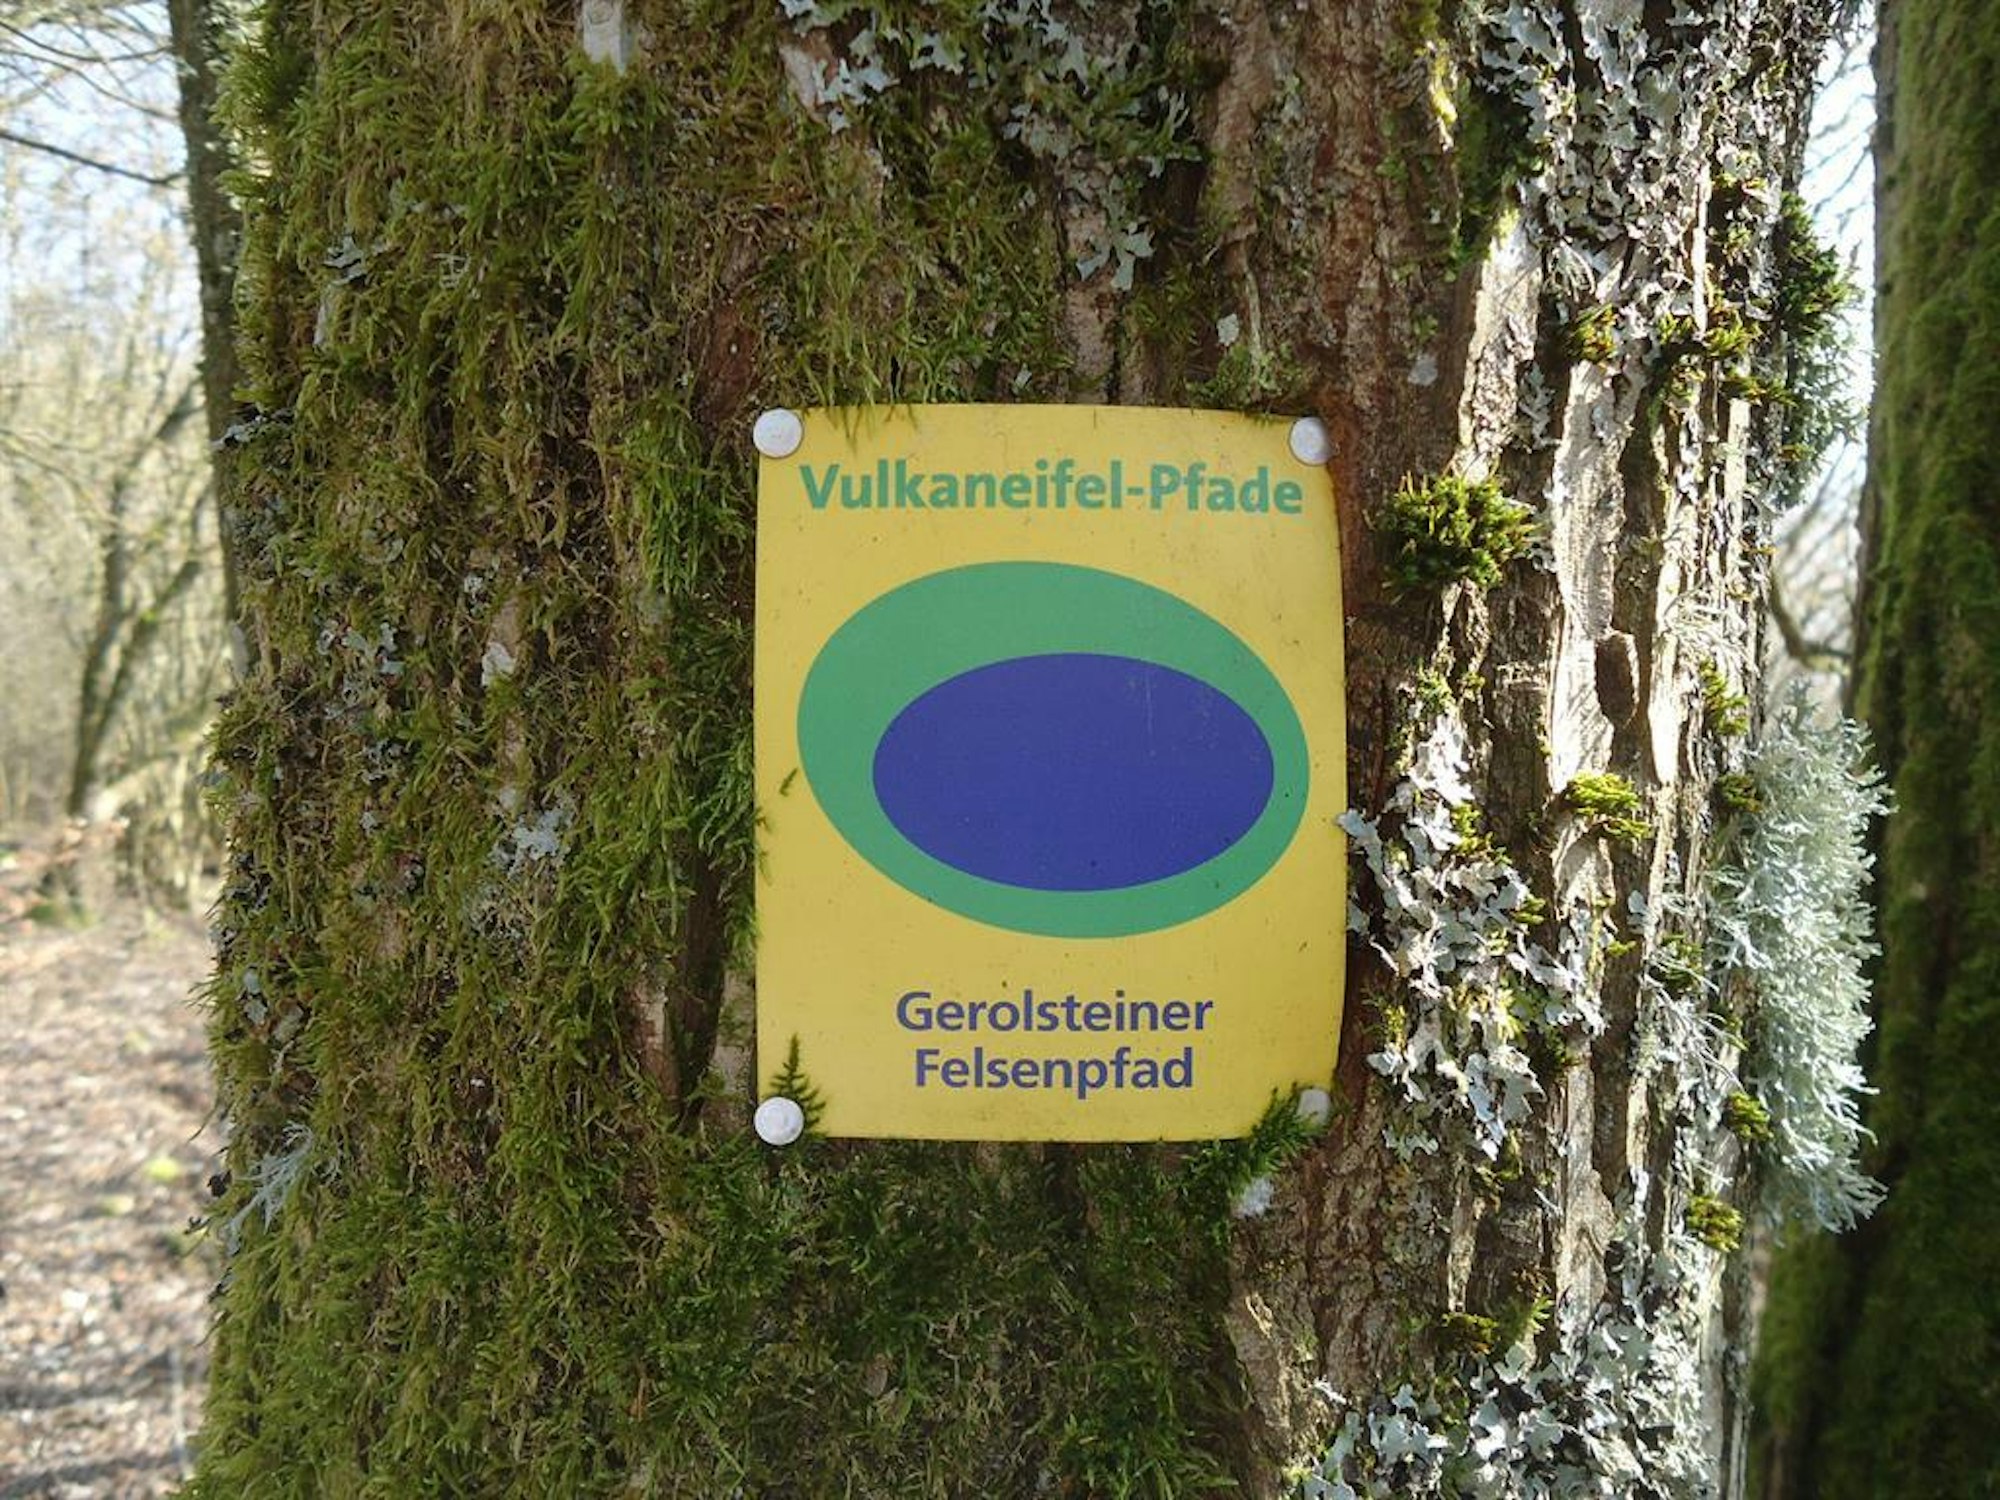 Vulkaneifel-gerolsteiner-felsenpfad Hedrich